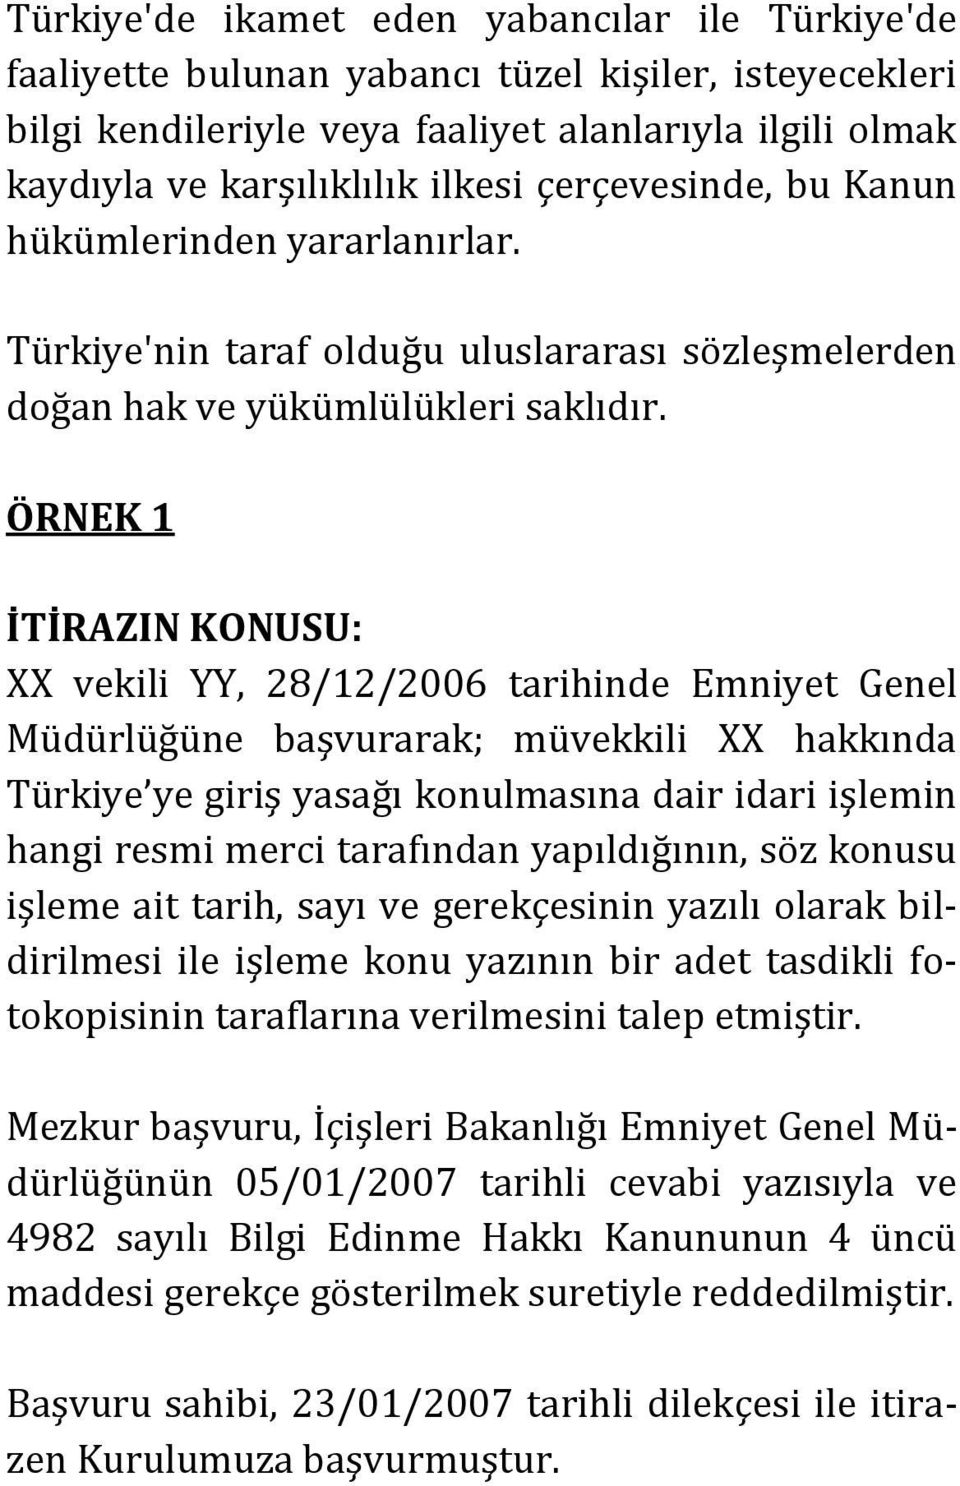 ÖRNEK 1 İTİRAZIN KONUSU: XX vekili YY, 28/12/2006 tarihinde Emniyet Genel Müdürlüğüne başvurarak; müvekkili XX hakkında Türkiye ye giriş yasağı konulmasına dair idari işlemin hangi resmi merci